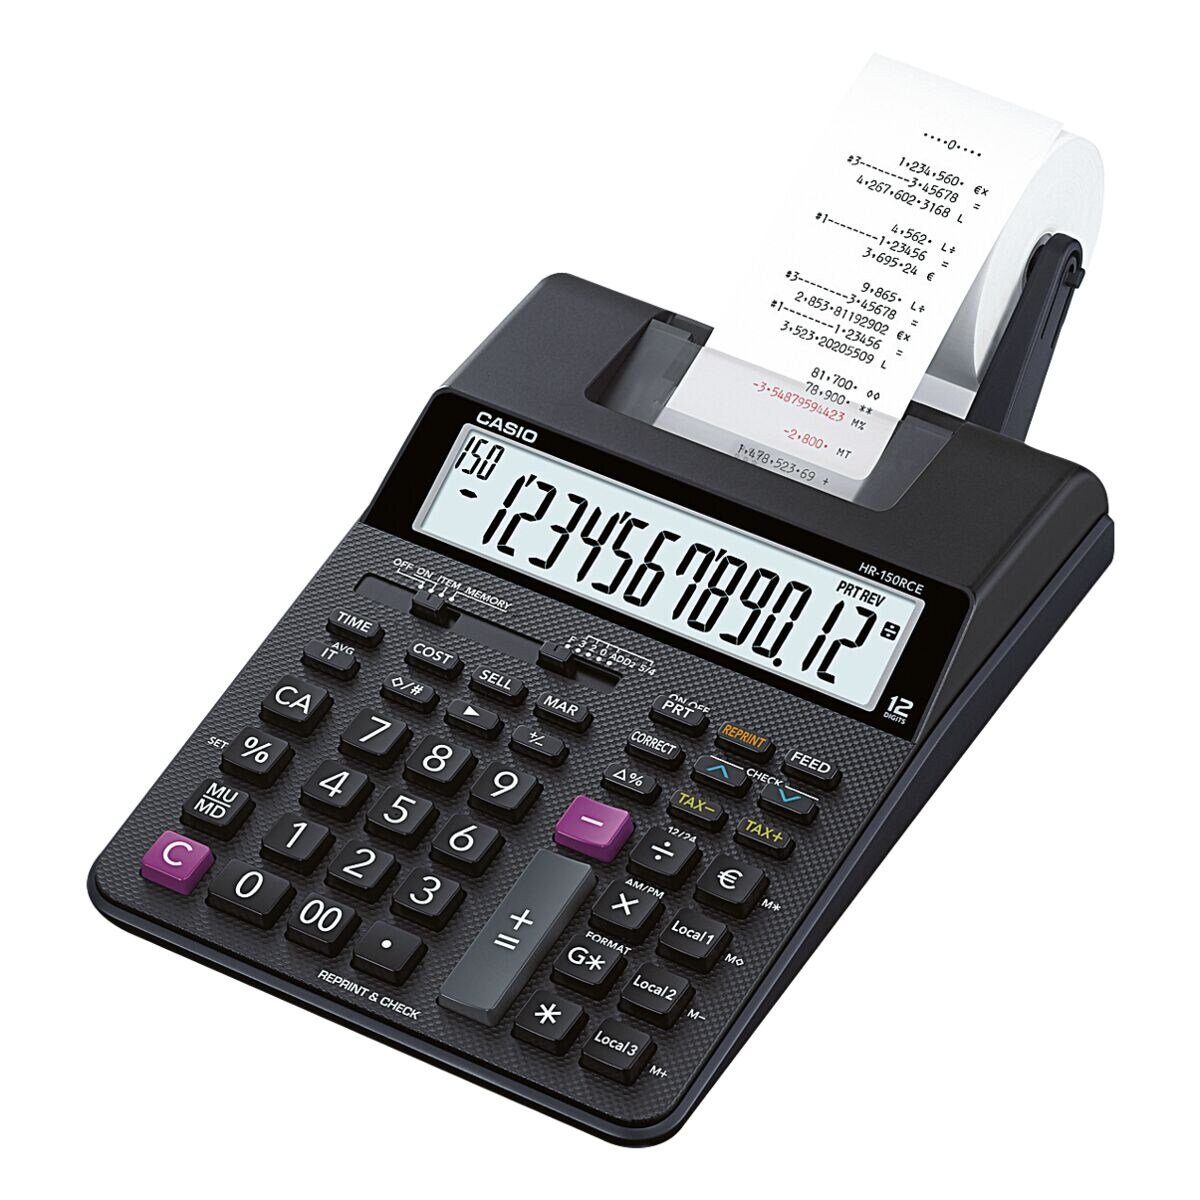 CASIO Taschenrechner HR-150RCE, 2-Farbdruck Druckfunktion/ mit